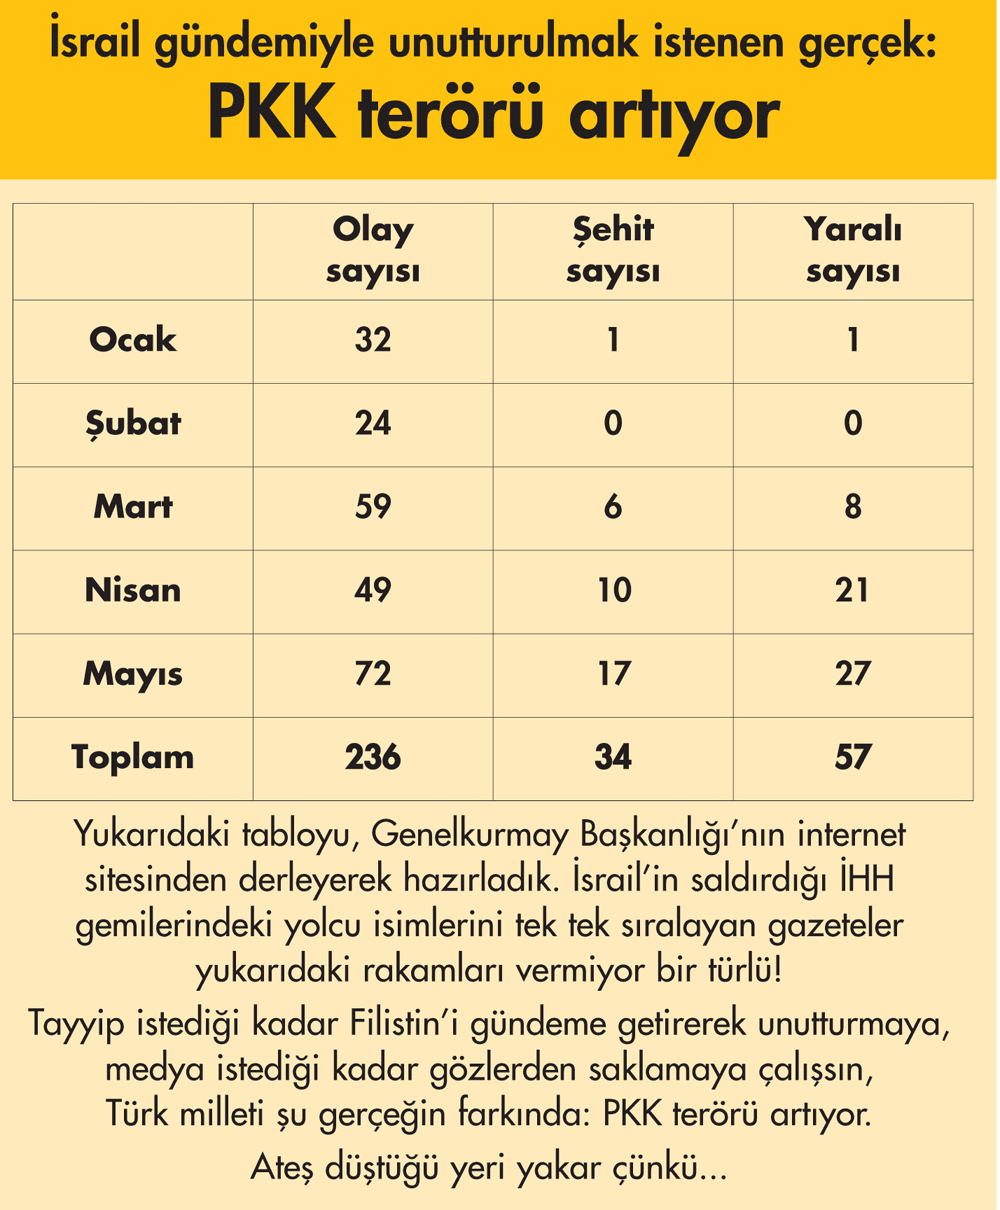 PKK TERORU ARTIYOR